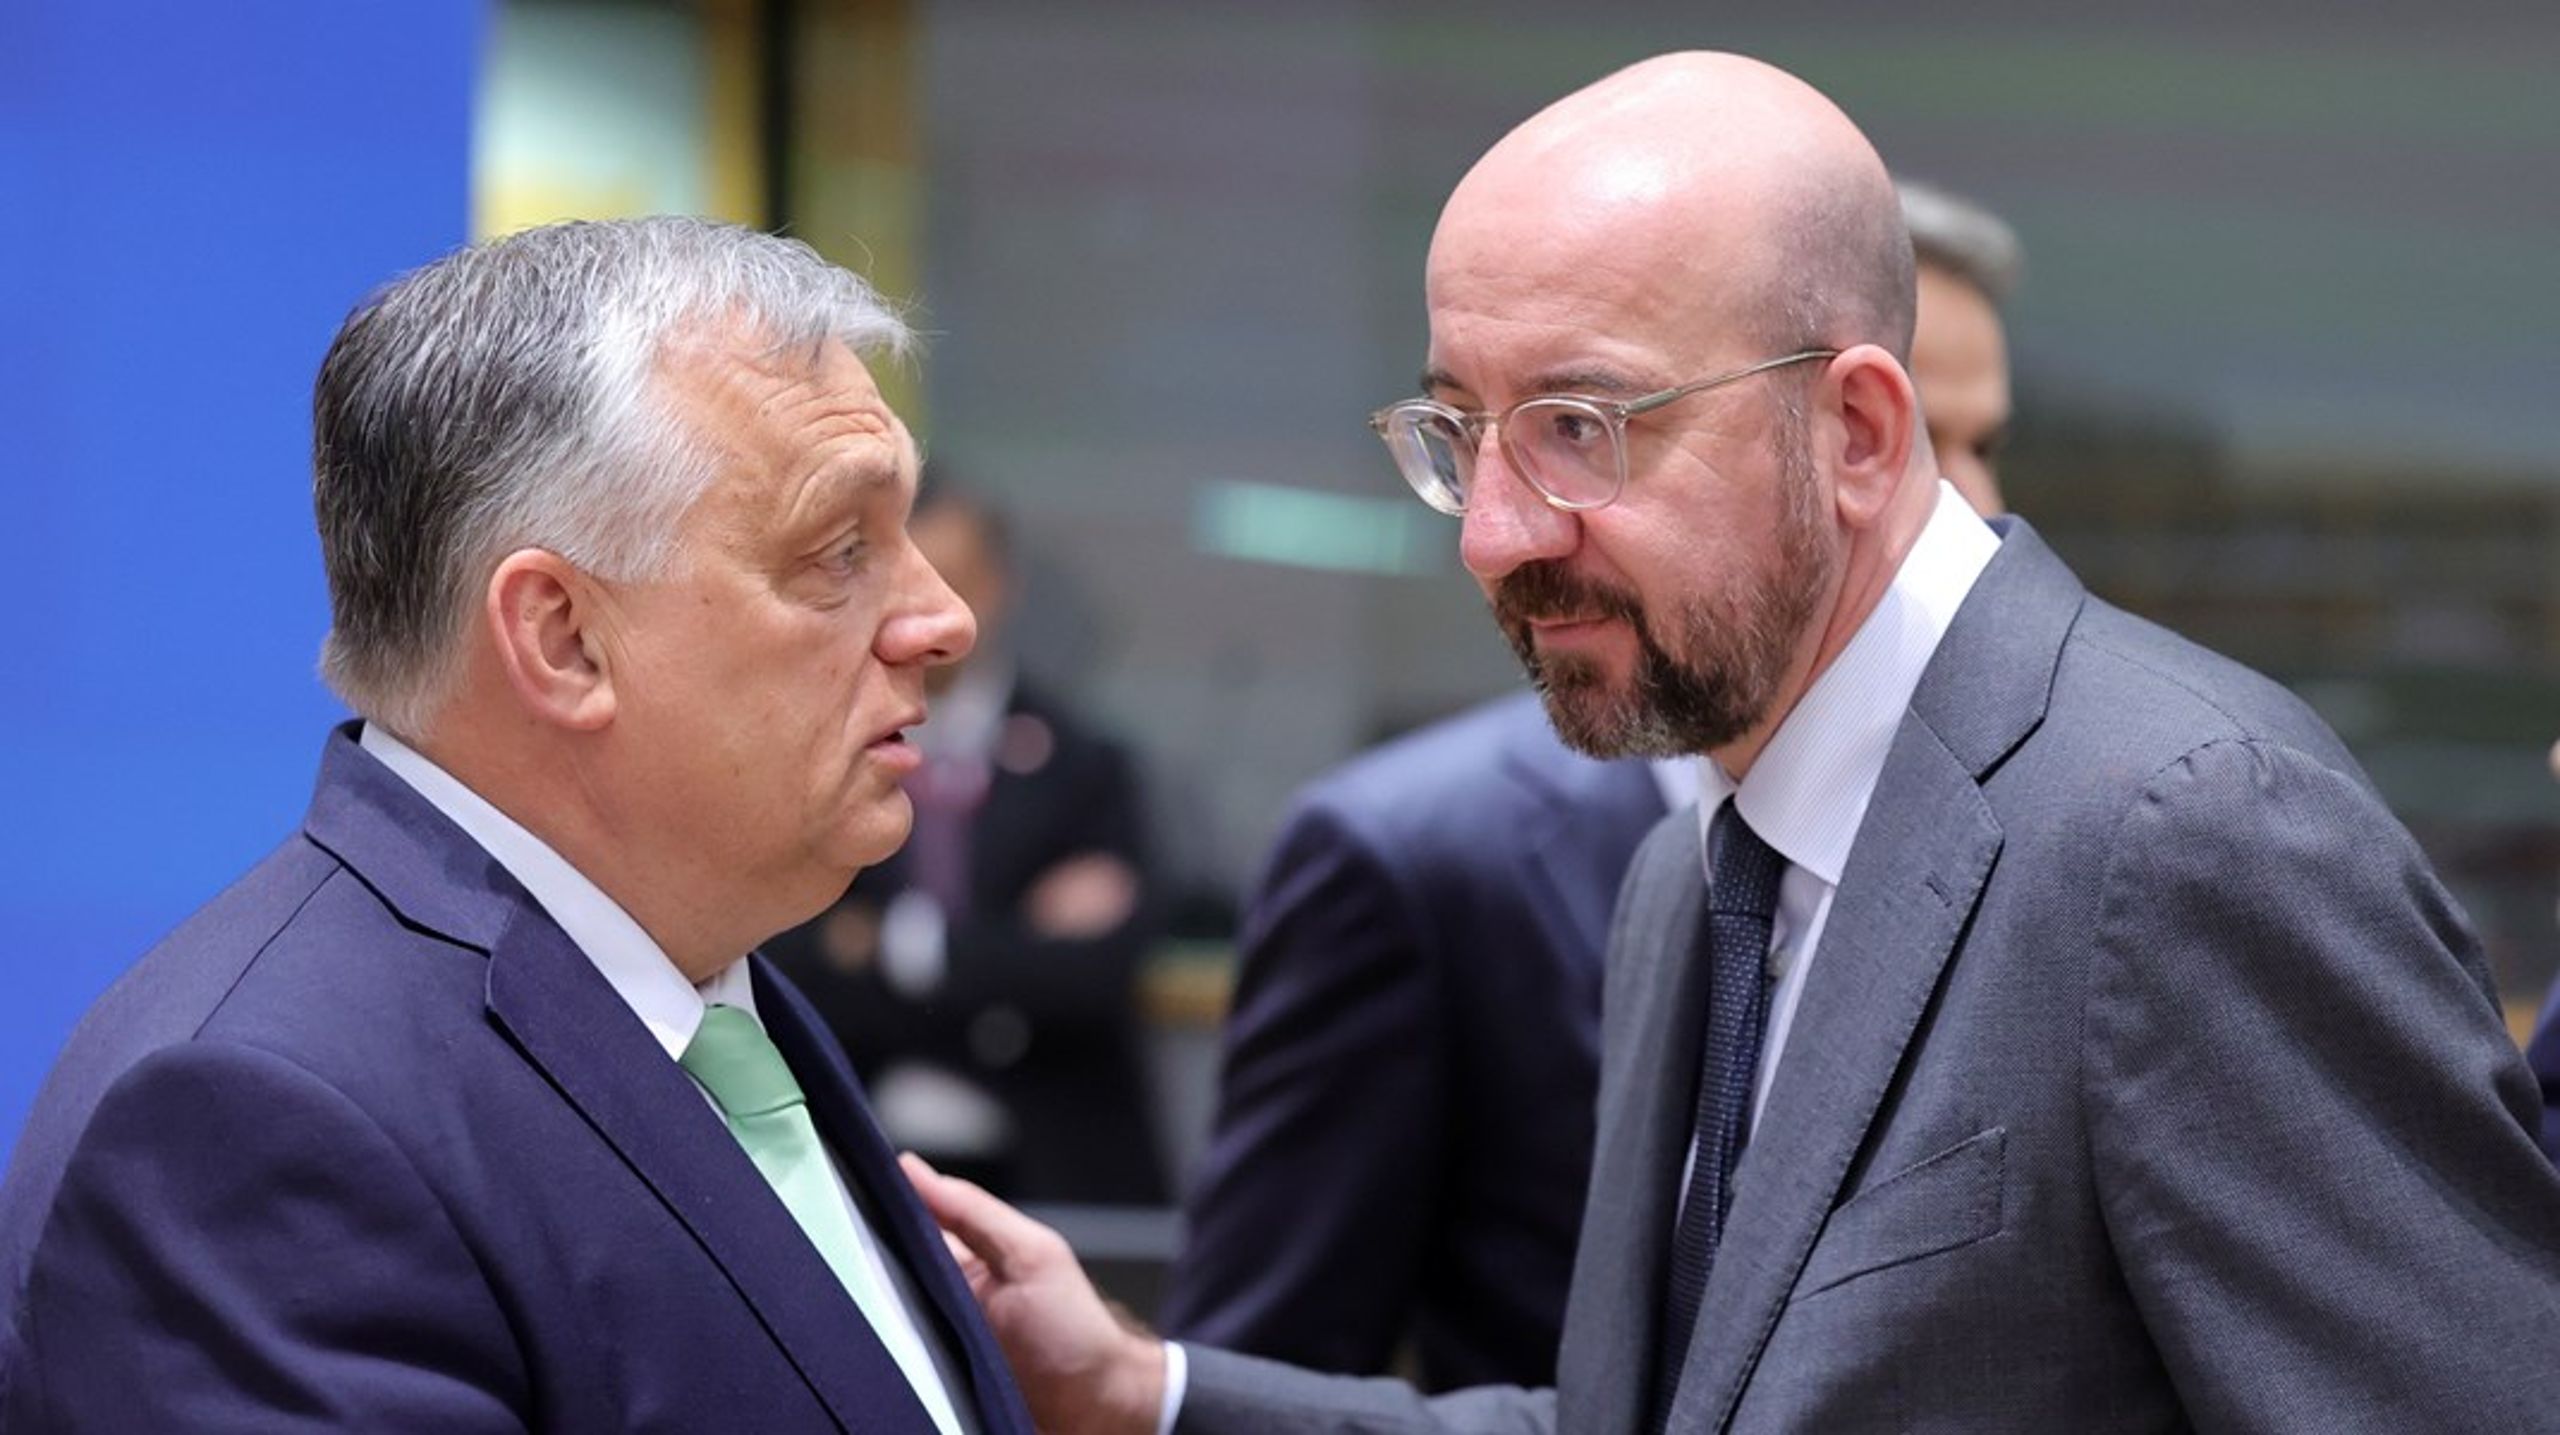 Hvis Charles Michel ender opp med å få et sete i Europaparlamentet etter valget i juni, må han fratre stillingen som president i Det europeiske råd tidligere enn planlagt. Dette kan føre til at Viktor Orbán blir innehaver av toppstillingen, frem til en ny president er valgt og innsatt i desember.<br>